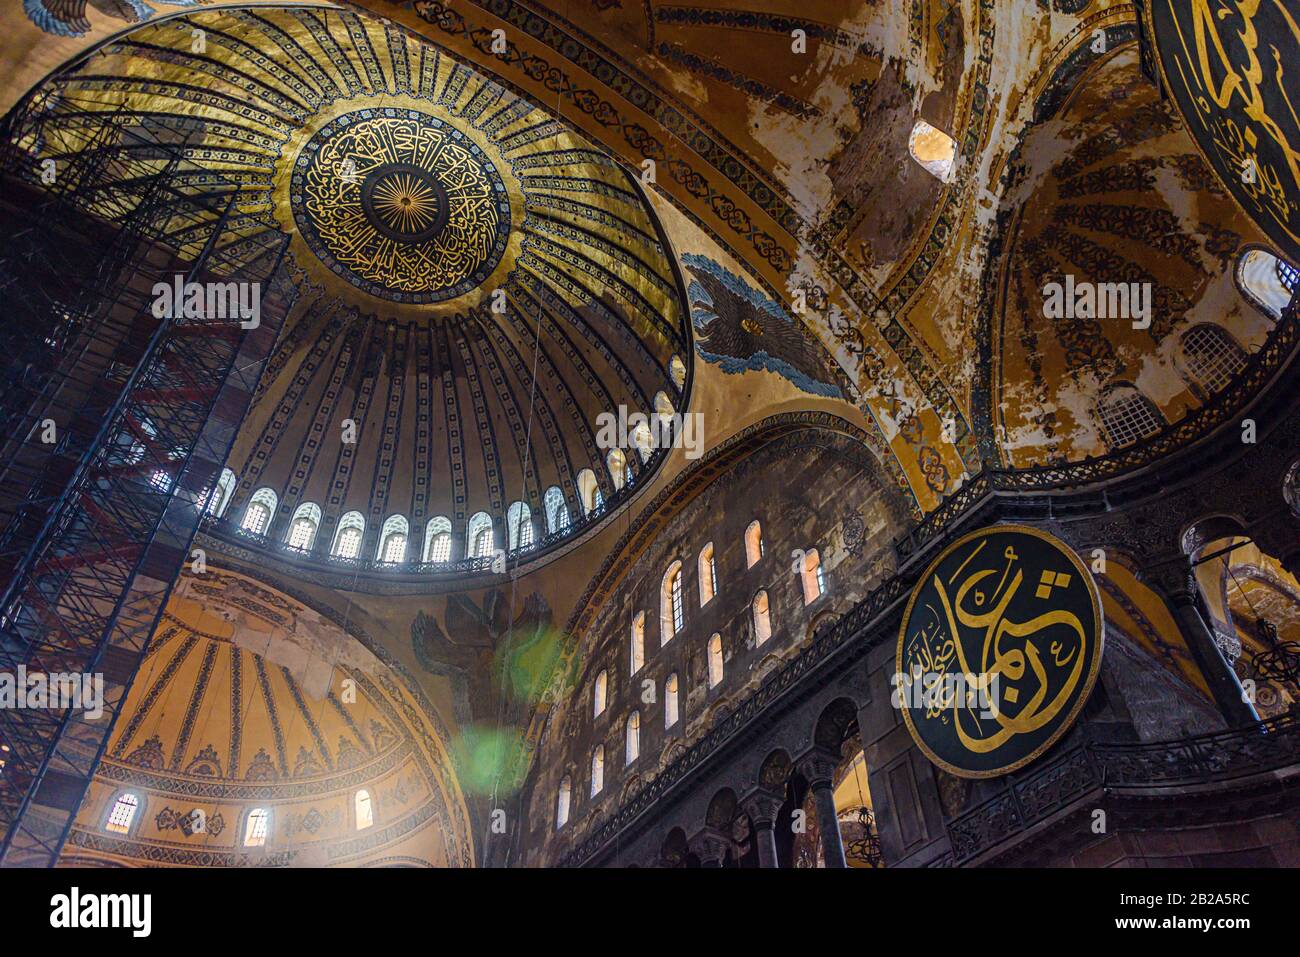 Verzierte Kuppel und bemalte Bögen mit später hinzugefügten islamischen Bannern im Hagia Sofia Museum, Istanbul, Türkei Stockfoto